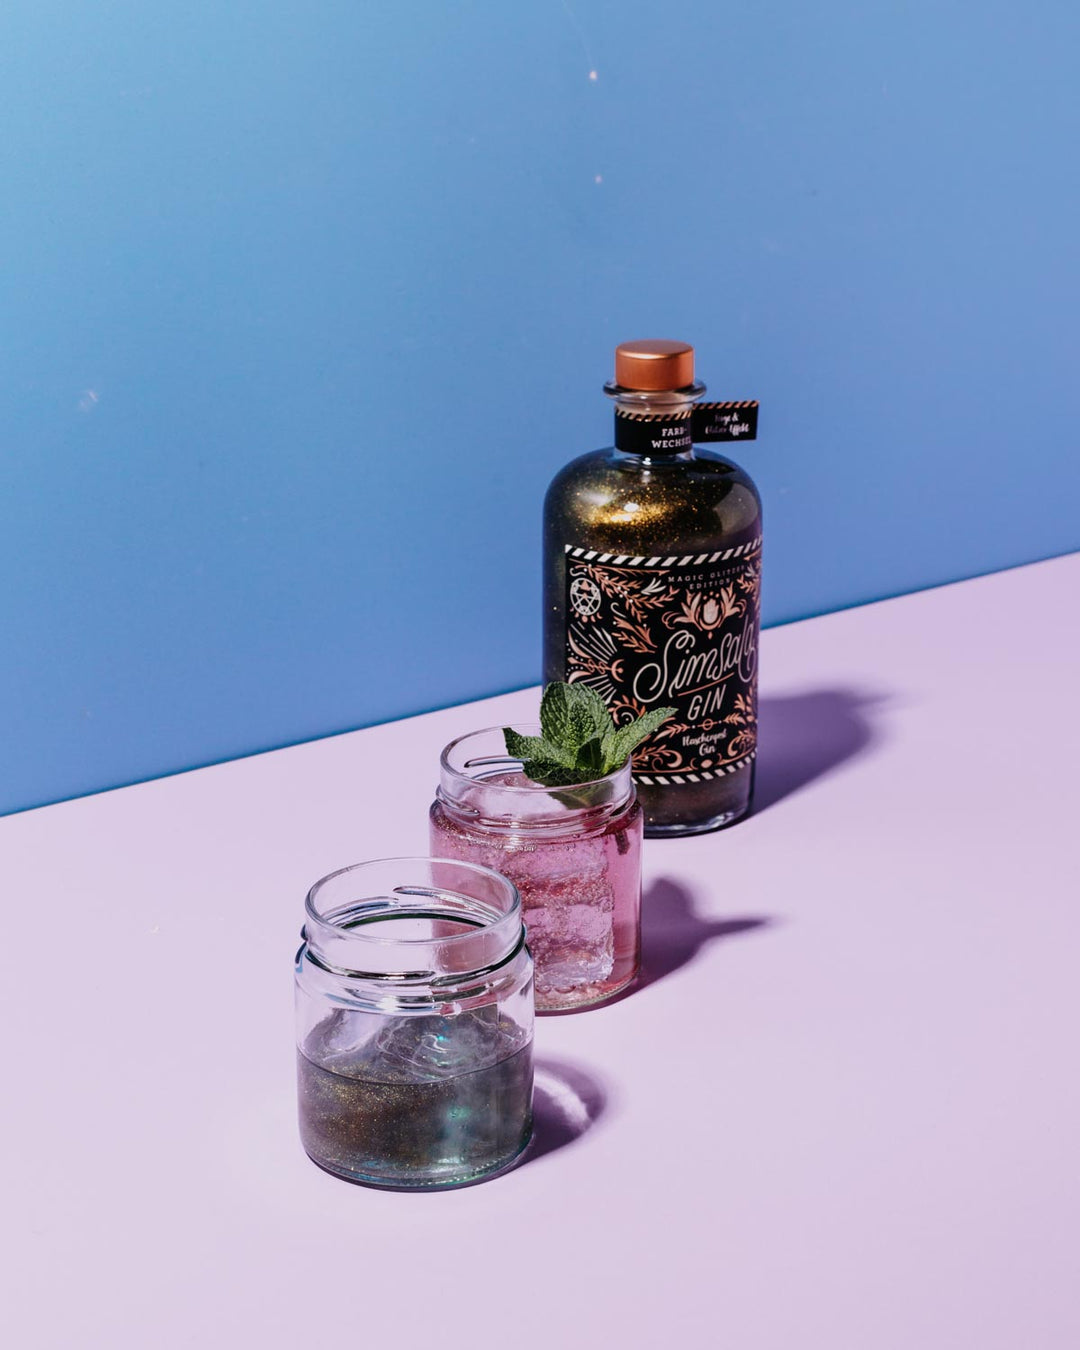 Der Simsala Gin von Flaschenpost Gin ist ideal für einen magischen Drink, der durch seine Farbveränderung und sein Glitzern begeistert. Mit Tonic Water wechselt die Farbe von blau zu lila und sorgt für ein einzigartiges Trinkerlebnis. Dieser Gin ist somit ein Highlight für jeden Cocktail-Liebhaber.